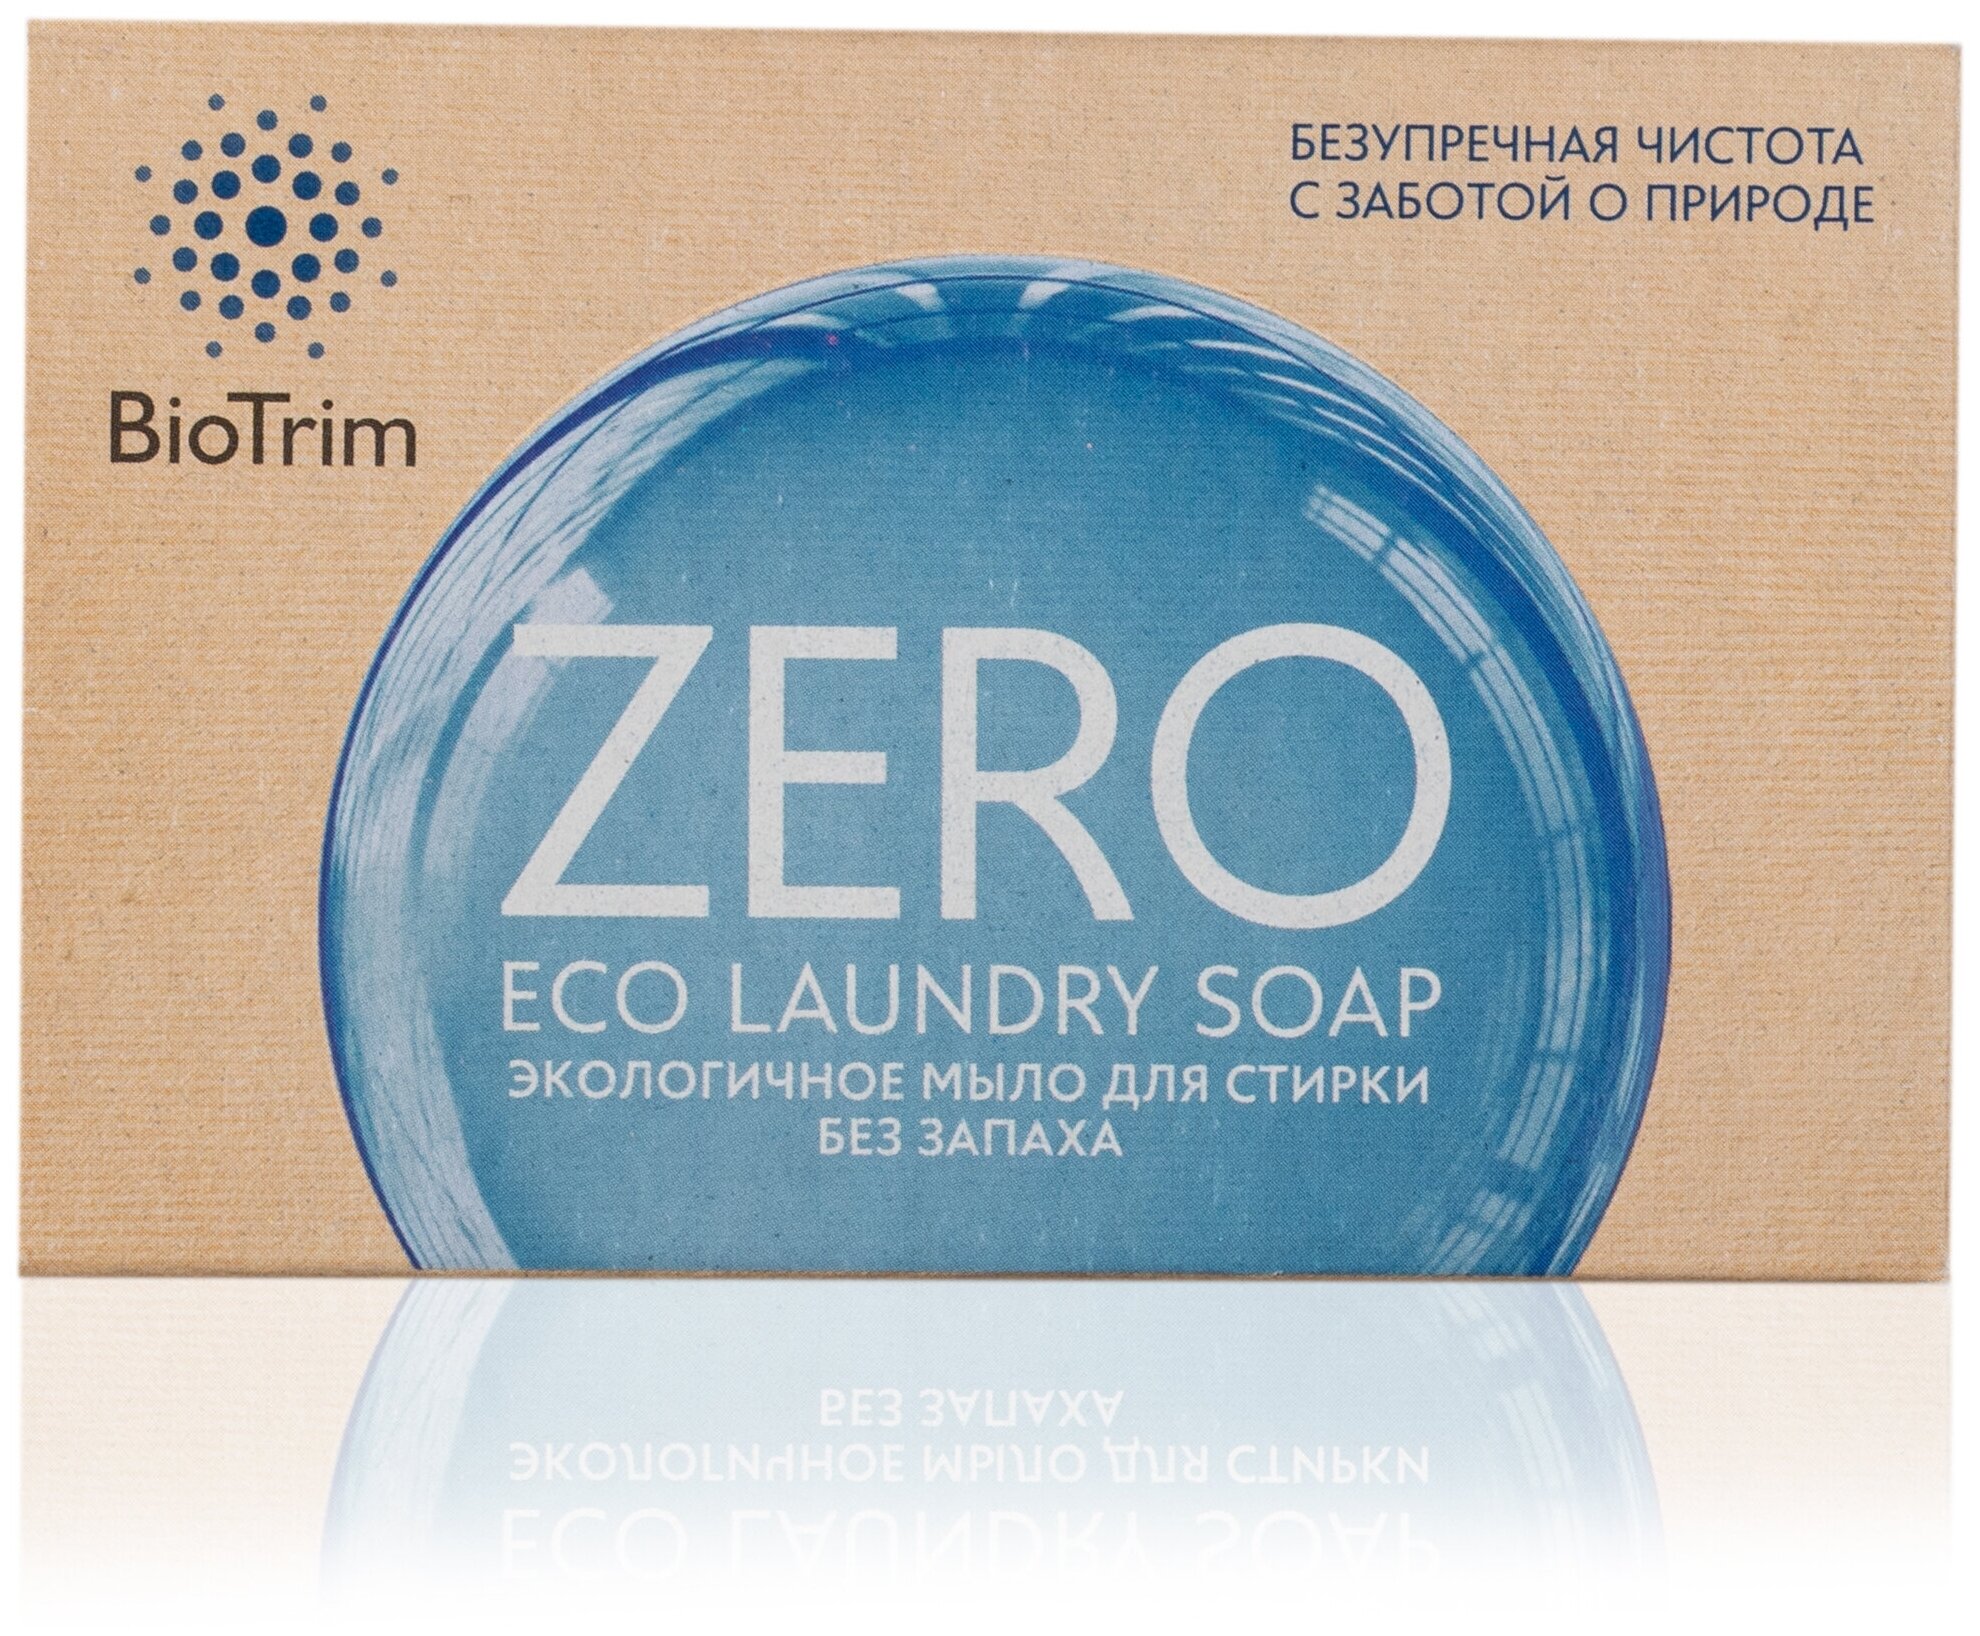 Экологичное мыло для стирки. Без запаха / BioTrim Eco Laundry Soap ZERO